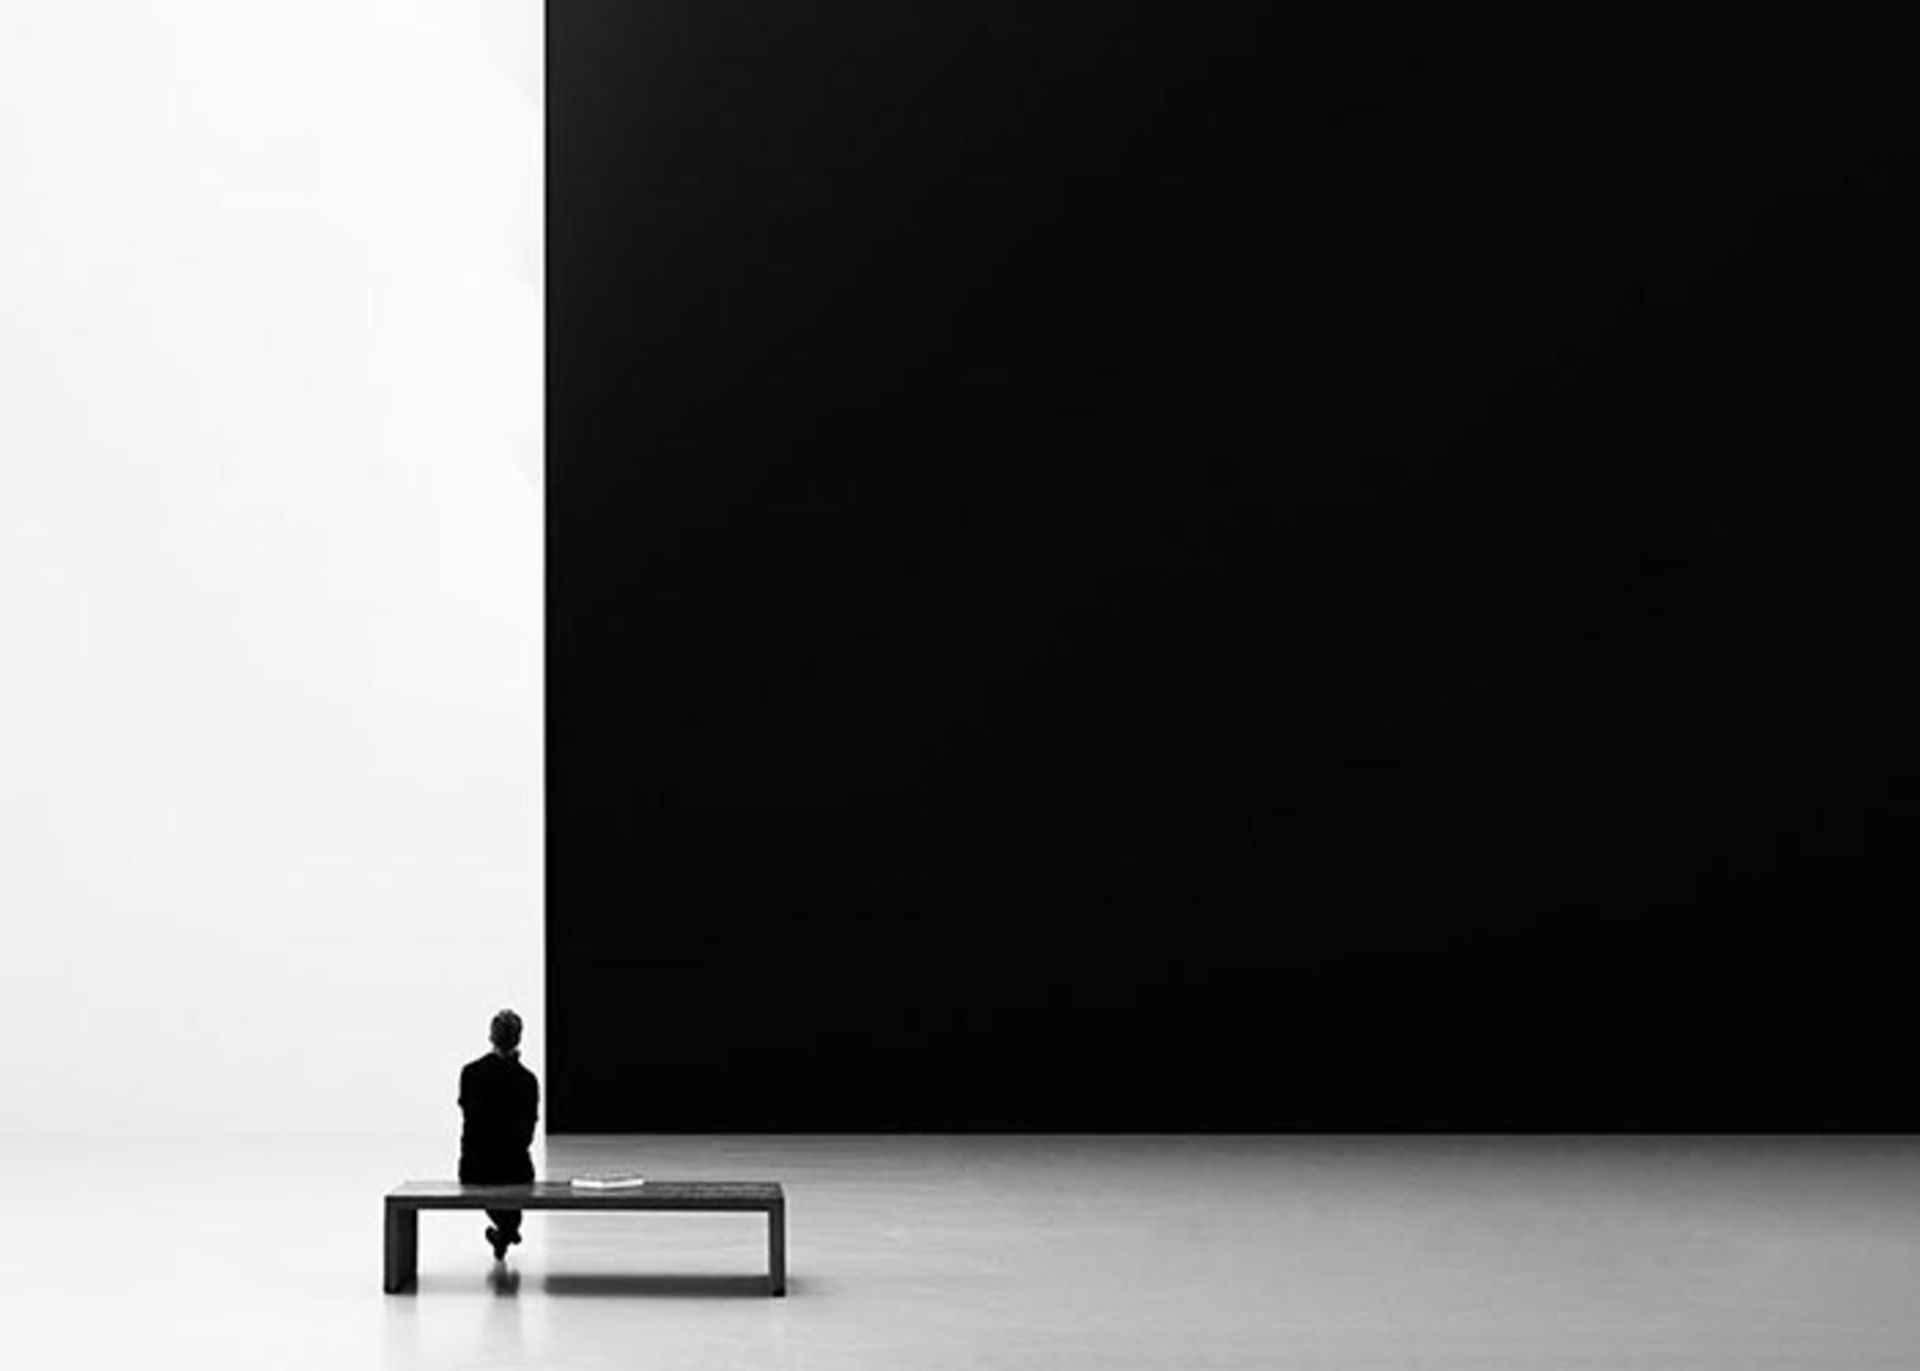 عکاسی سیاه و سفید (Black-and-white photography)